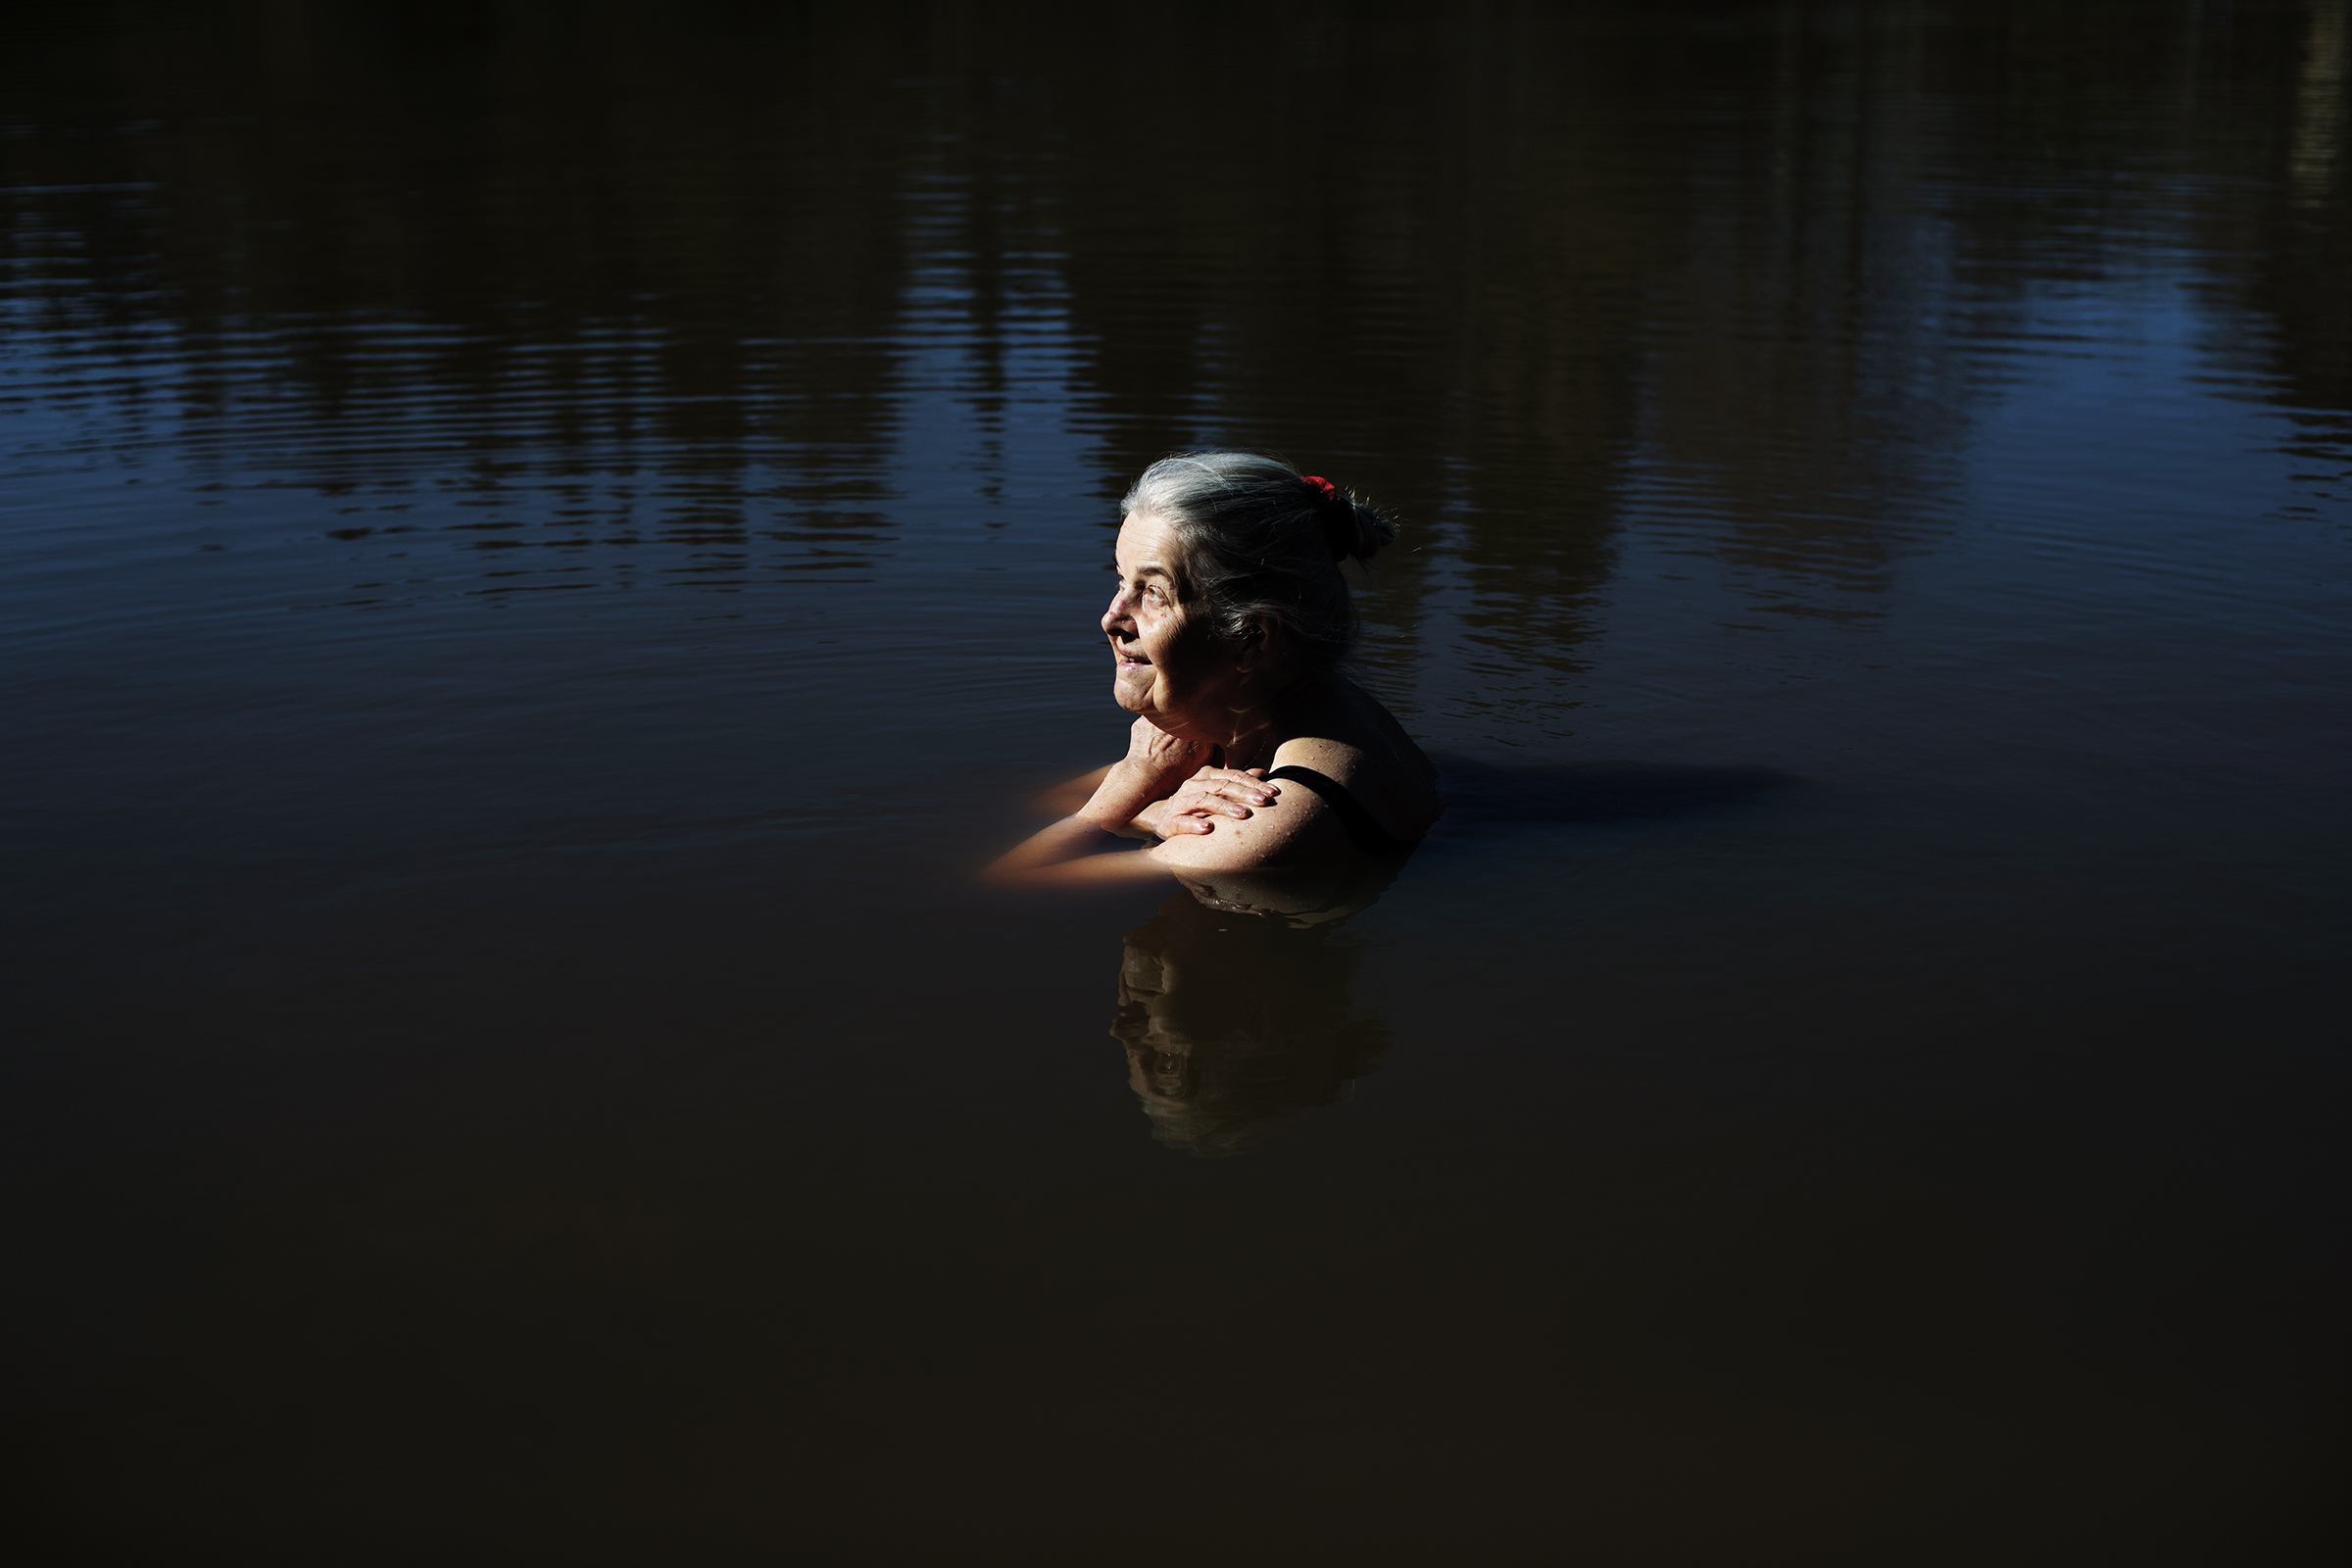 Vanha harmaahiuksinen nainen on vedessä kainaloita myöten. Aurinko valaisee hänet, vedenpinta on tyyni ja tumma.